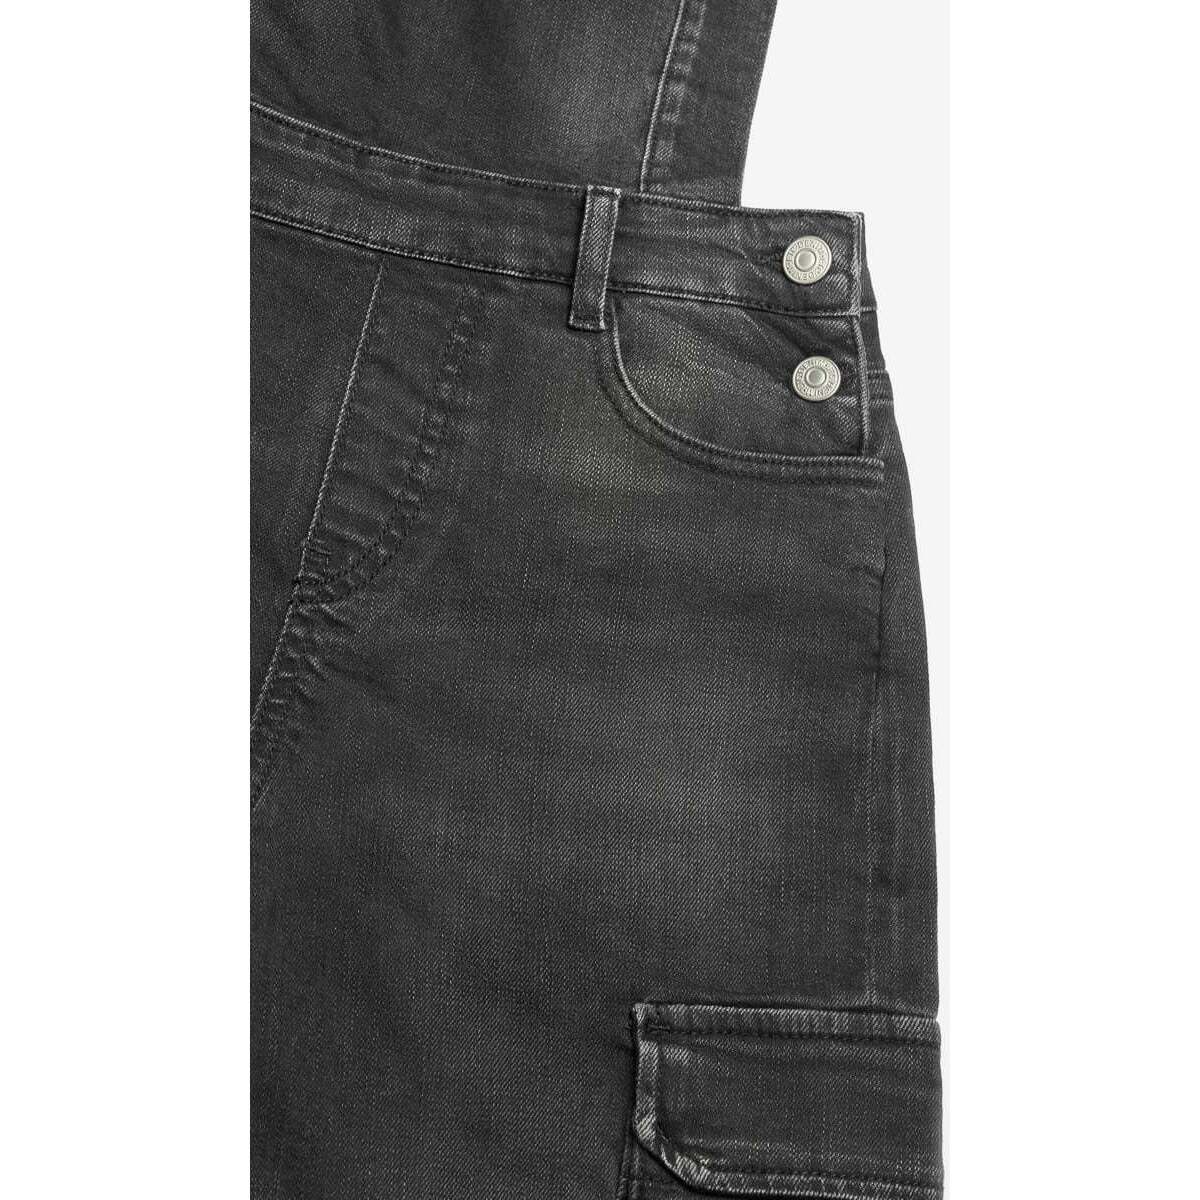 Le Temps des Cerises Noir Salopette pantalon camil en jeans noir délavé vjJa16V5